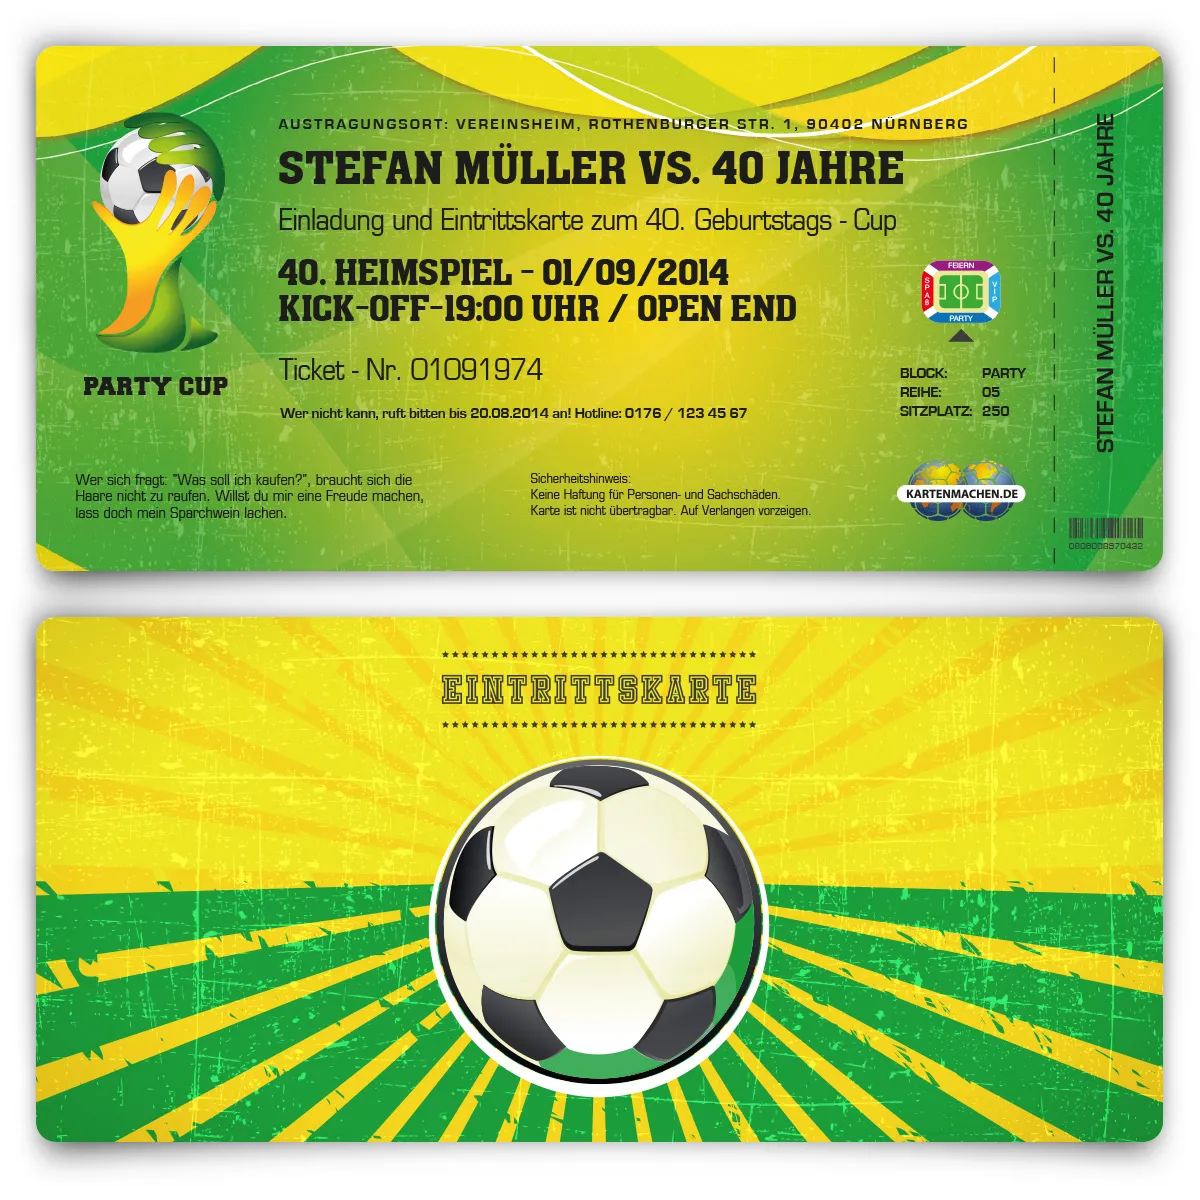 Einladung als Fussballticket - Brazil